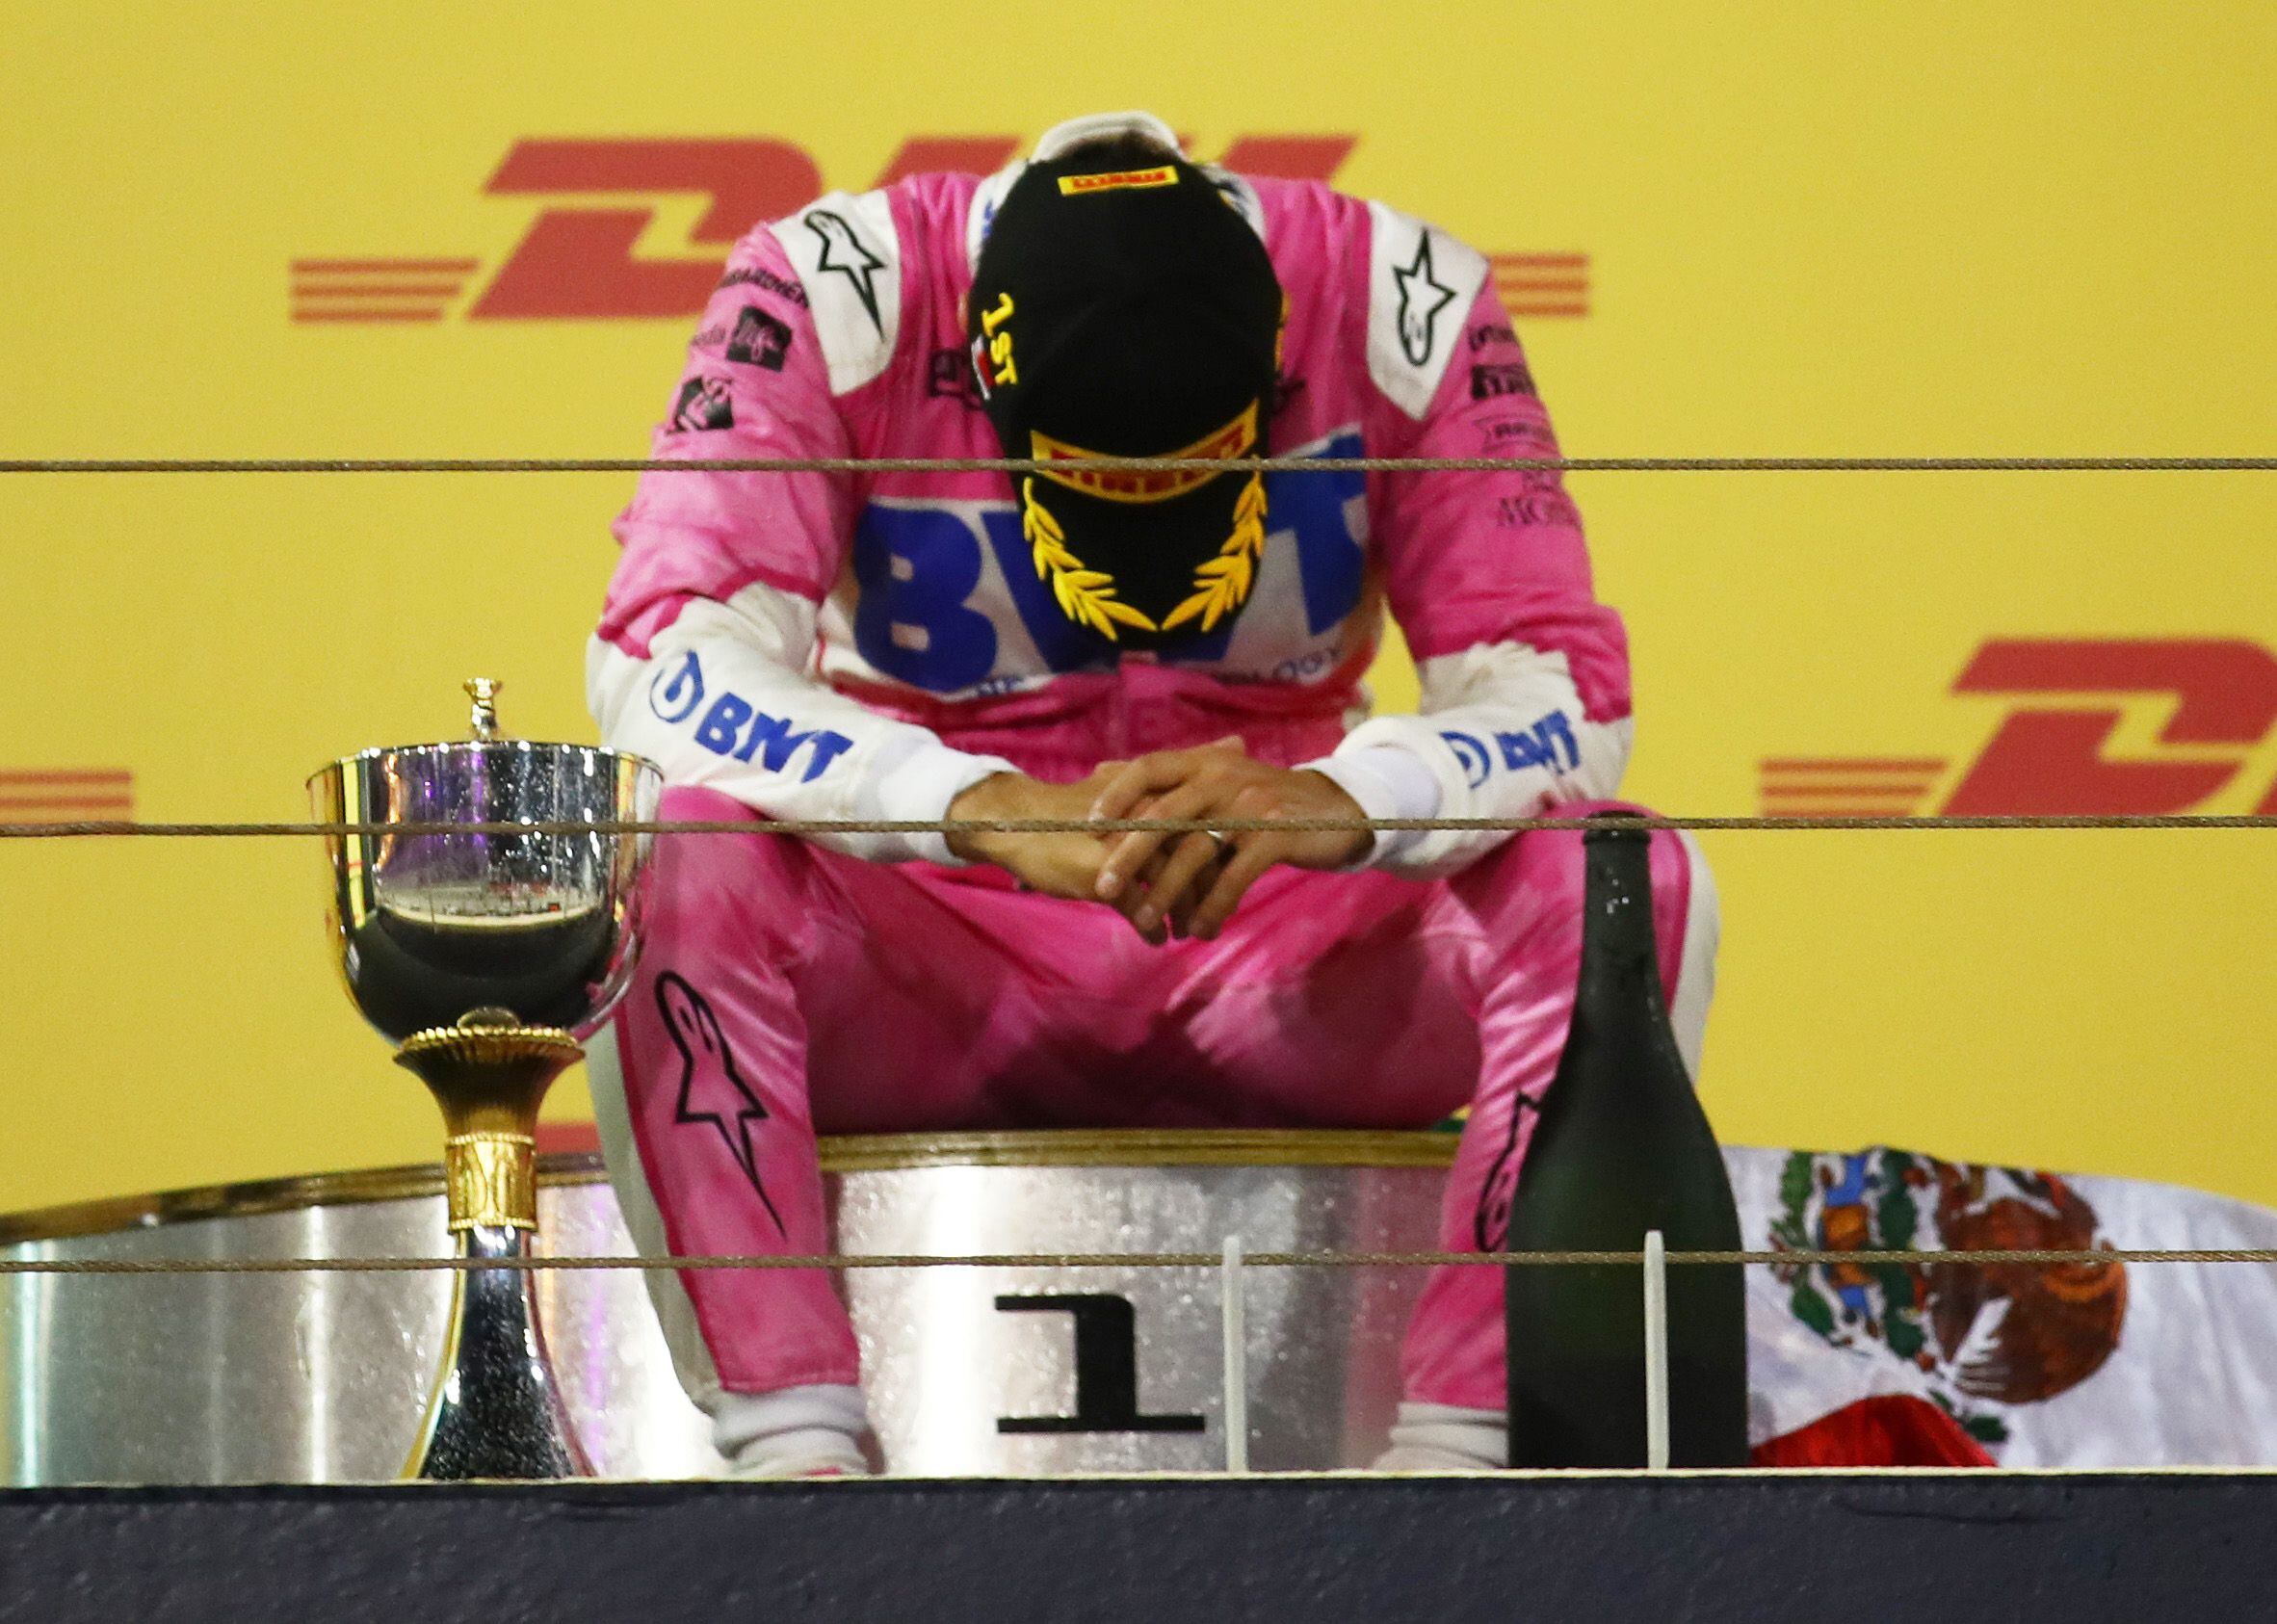 El 6 de diciembre de 2020, Checo Pérez consiguió la primera victoria de su carrera en la Fórmula 1 y llevó su bandera a lo más alto del podio (Foto: REUTERS/Bryn Lennon)